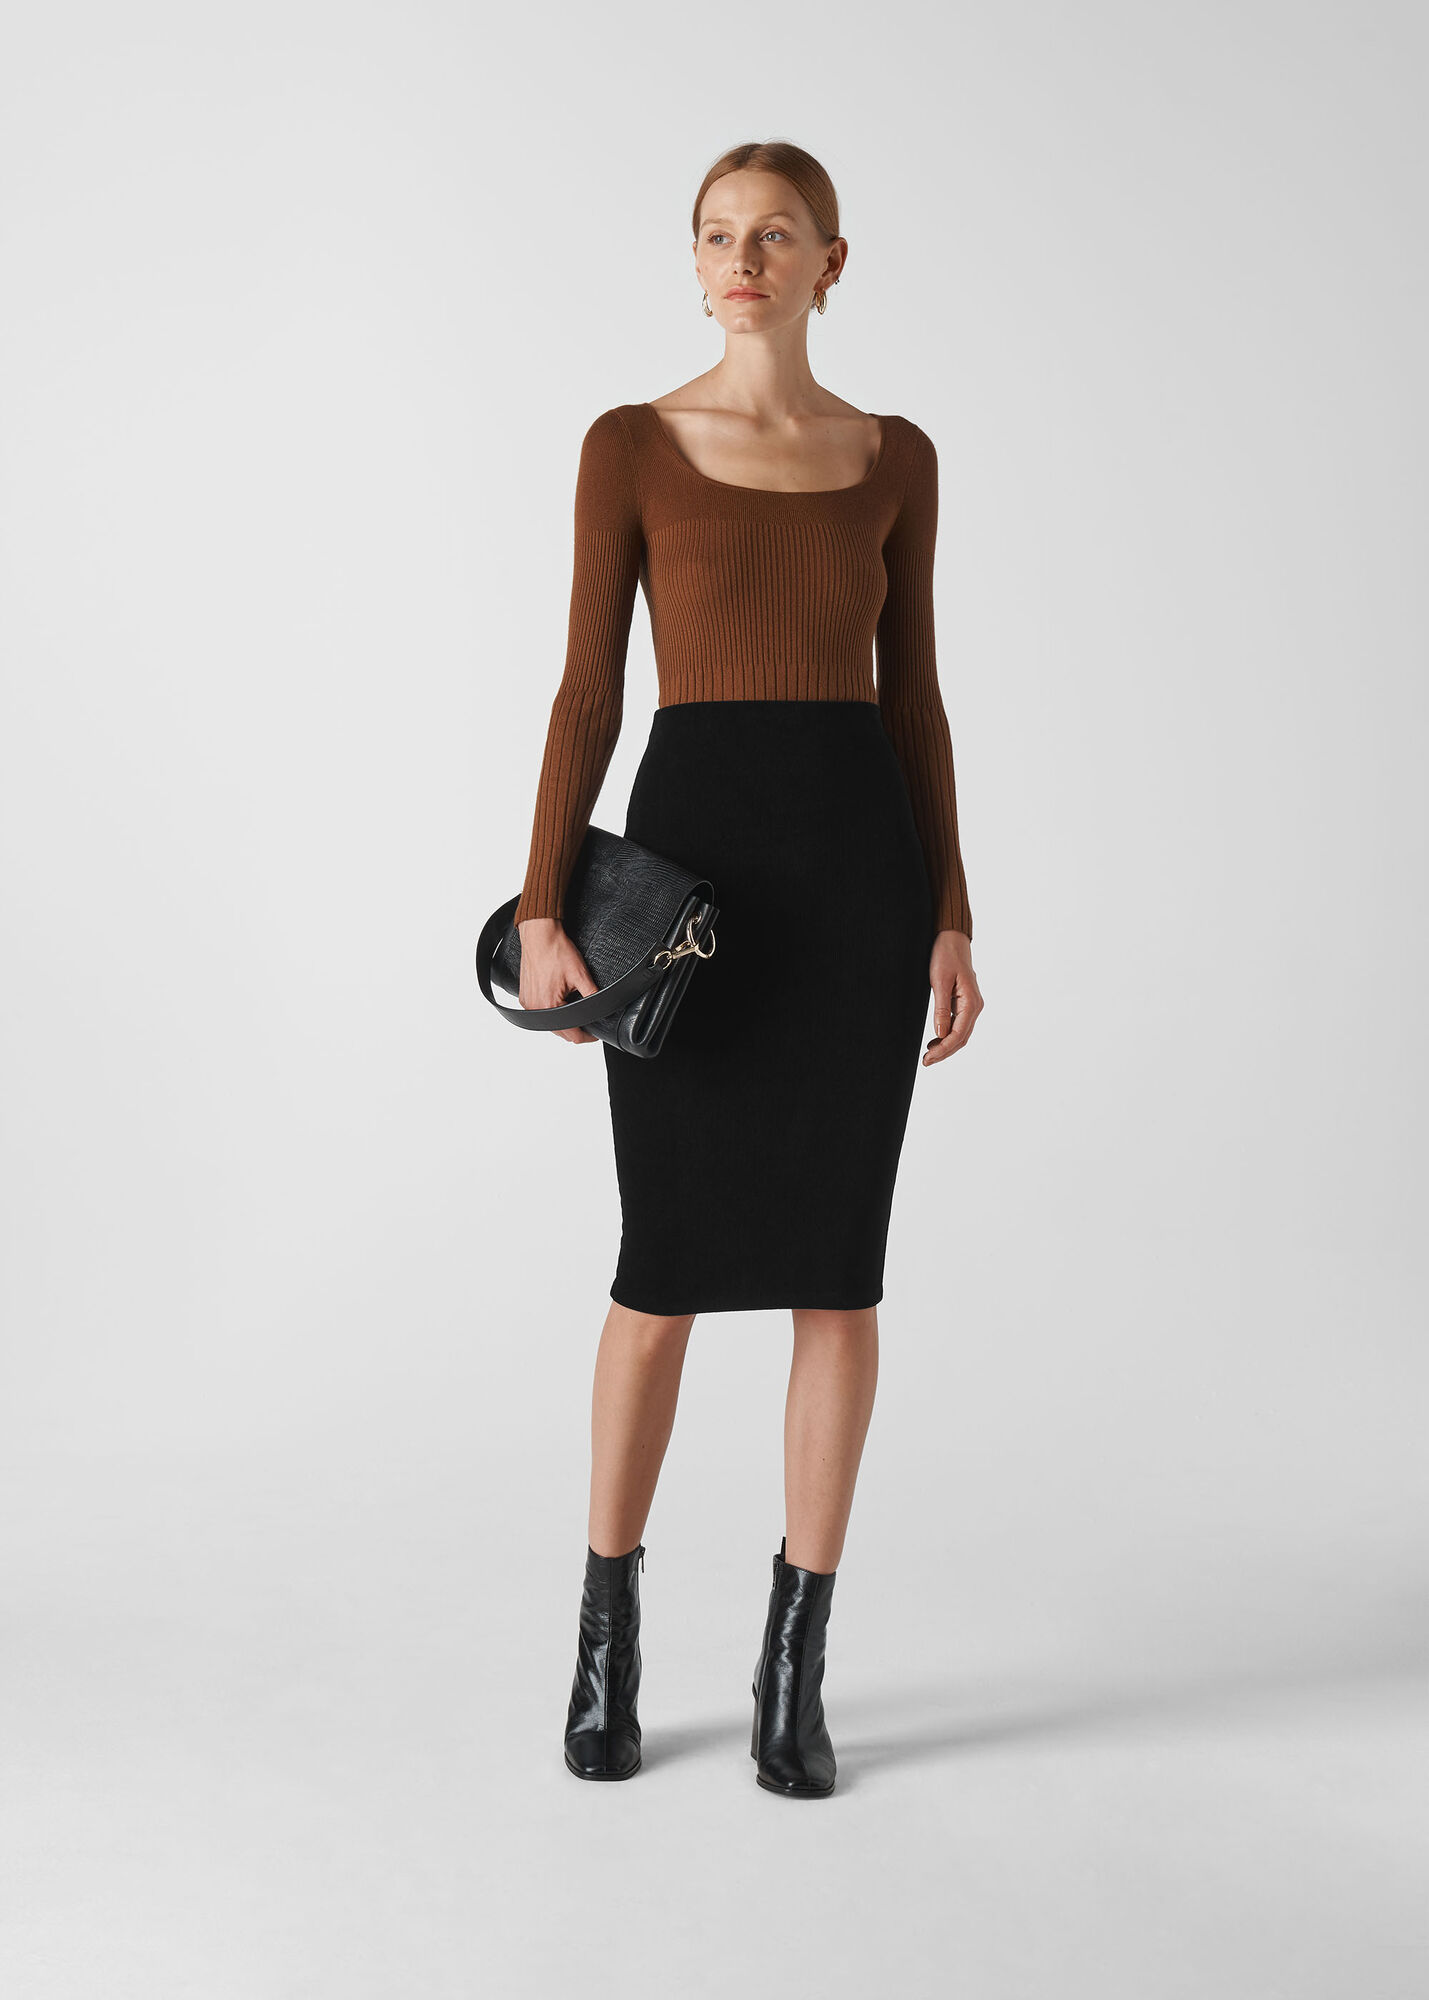 Black Velvet Jersey Tube Skirt | WHISTLES